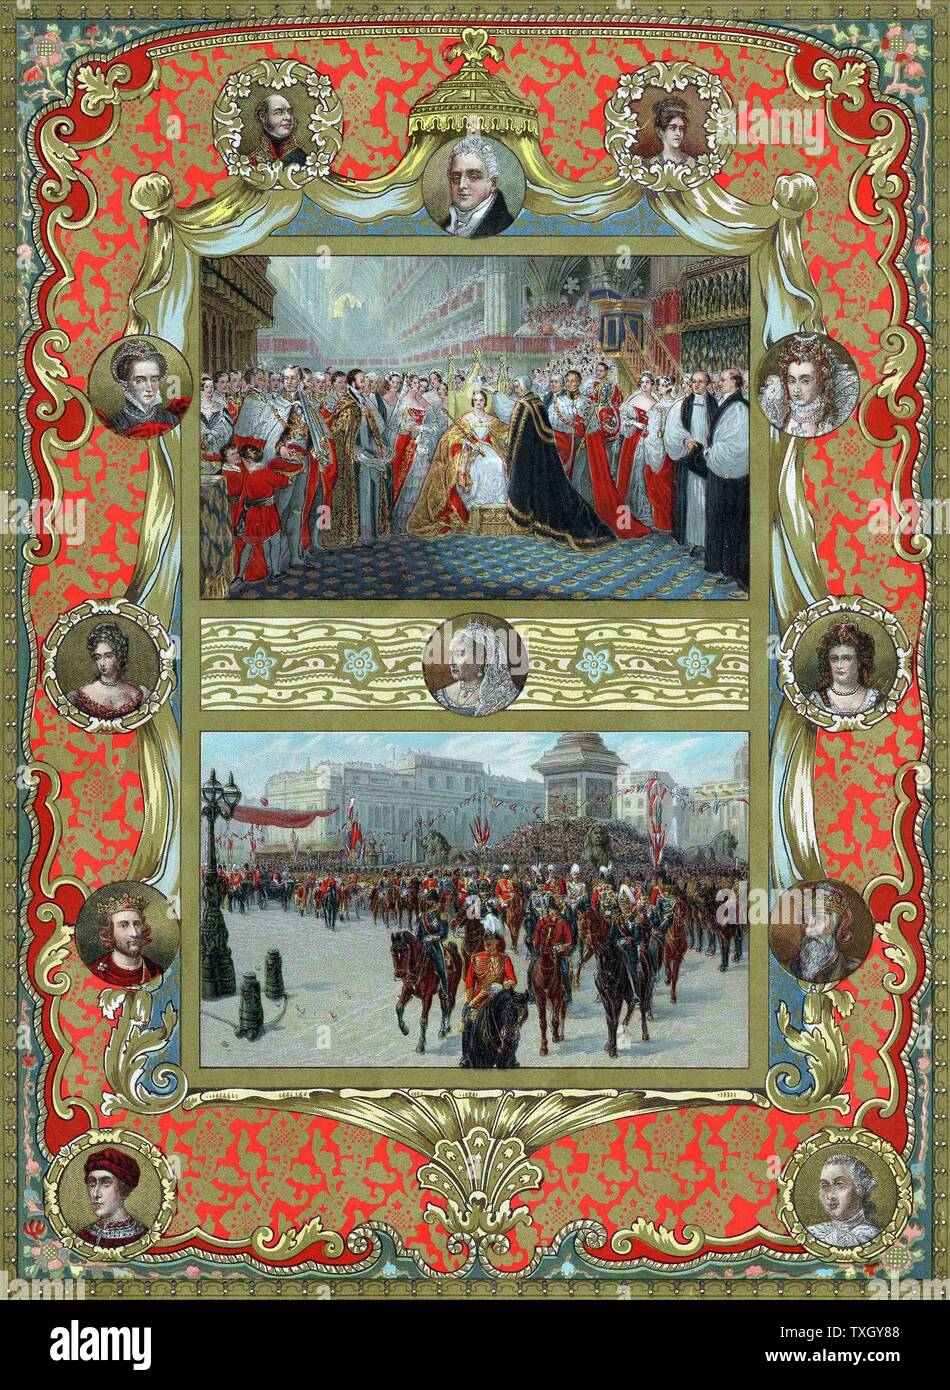 La reine Victoria (1819-1901) reine de France à partir de 1837, l'Impératrice de l'Inde de 1876, couronnement dans l'abbaye de Westminster, le 28 juin 1837. L'archevêque de Canterbury, plaçant couronne sur Queen's head (en haut) ; procession jubilaire 22 juin 1887 (en bas) ; portraits environnants : top ; Duc de Kent (père), William IV, duchesse de Kent (mère), gauche, Marie, Reine des Écossais, Mary II, Henri III, Édouard III, George III Oleograph publié au moment de son jubilé en 1887 Banque D'Images